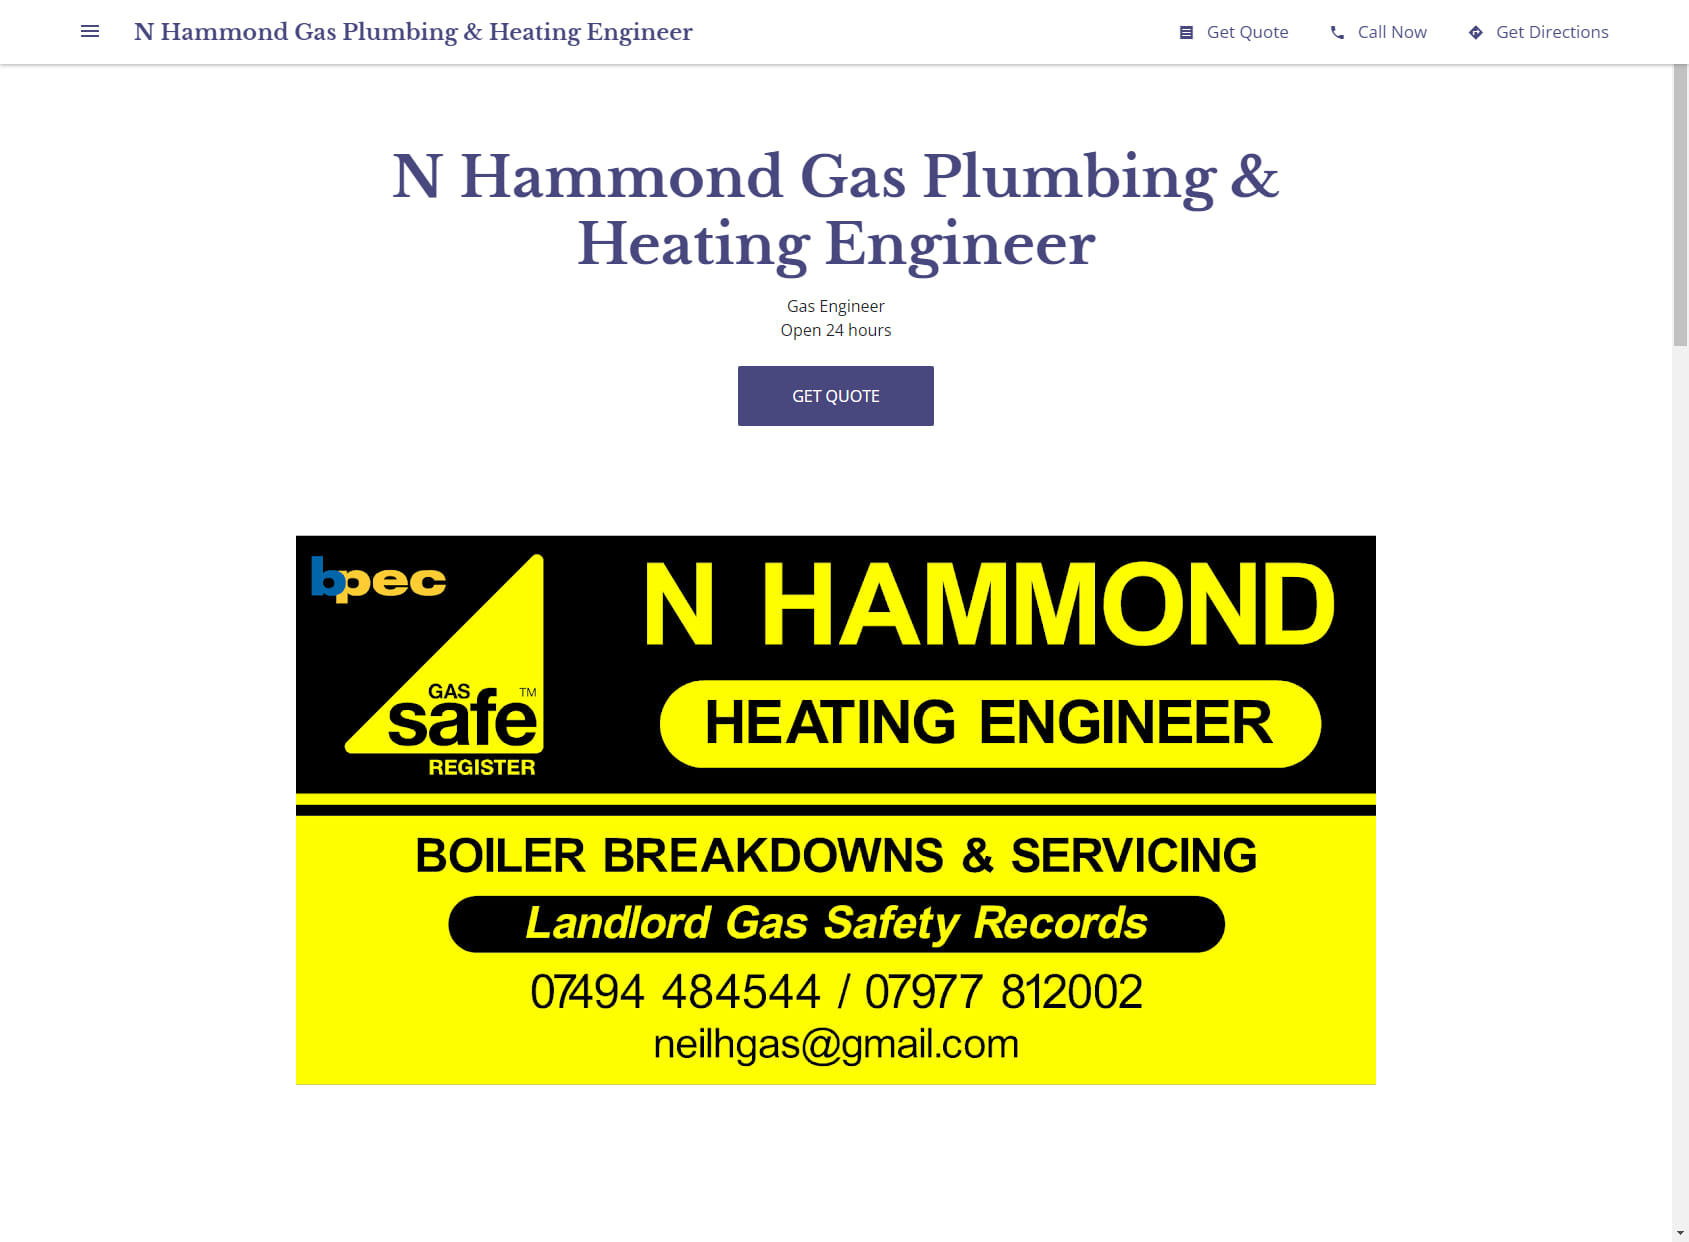 N Hammond Gas Plumbing & Heating Engineer